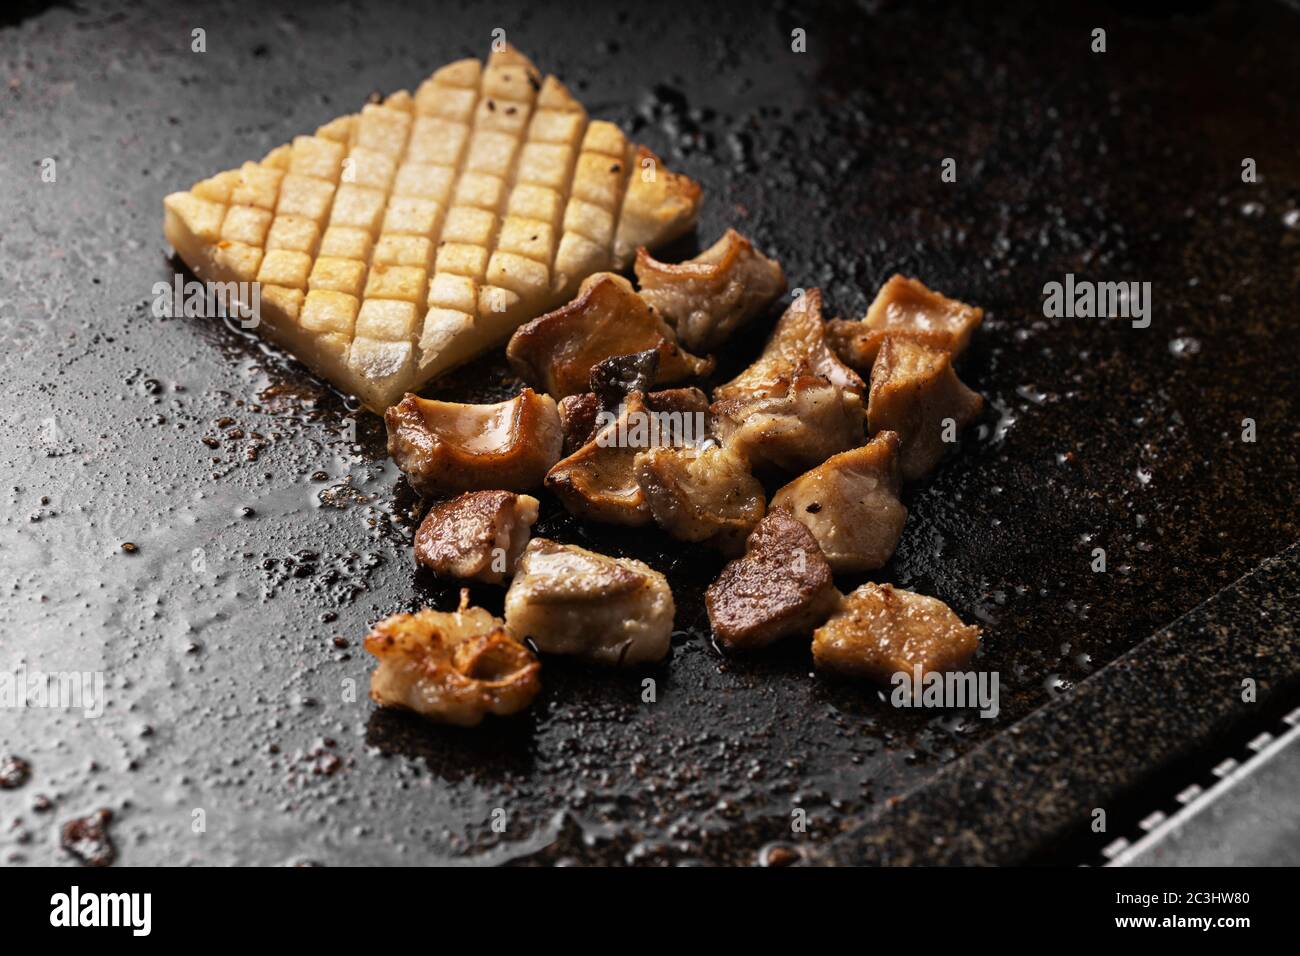 Photo grand angle de délicieux plats de viande et de pommes de terre un bac noir Banque D'Images